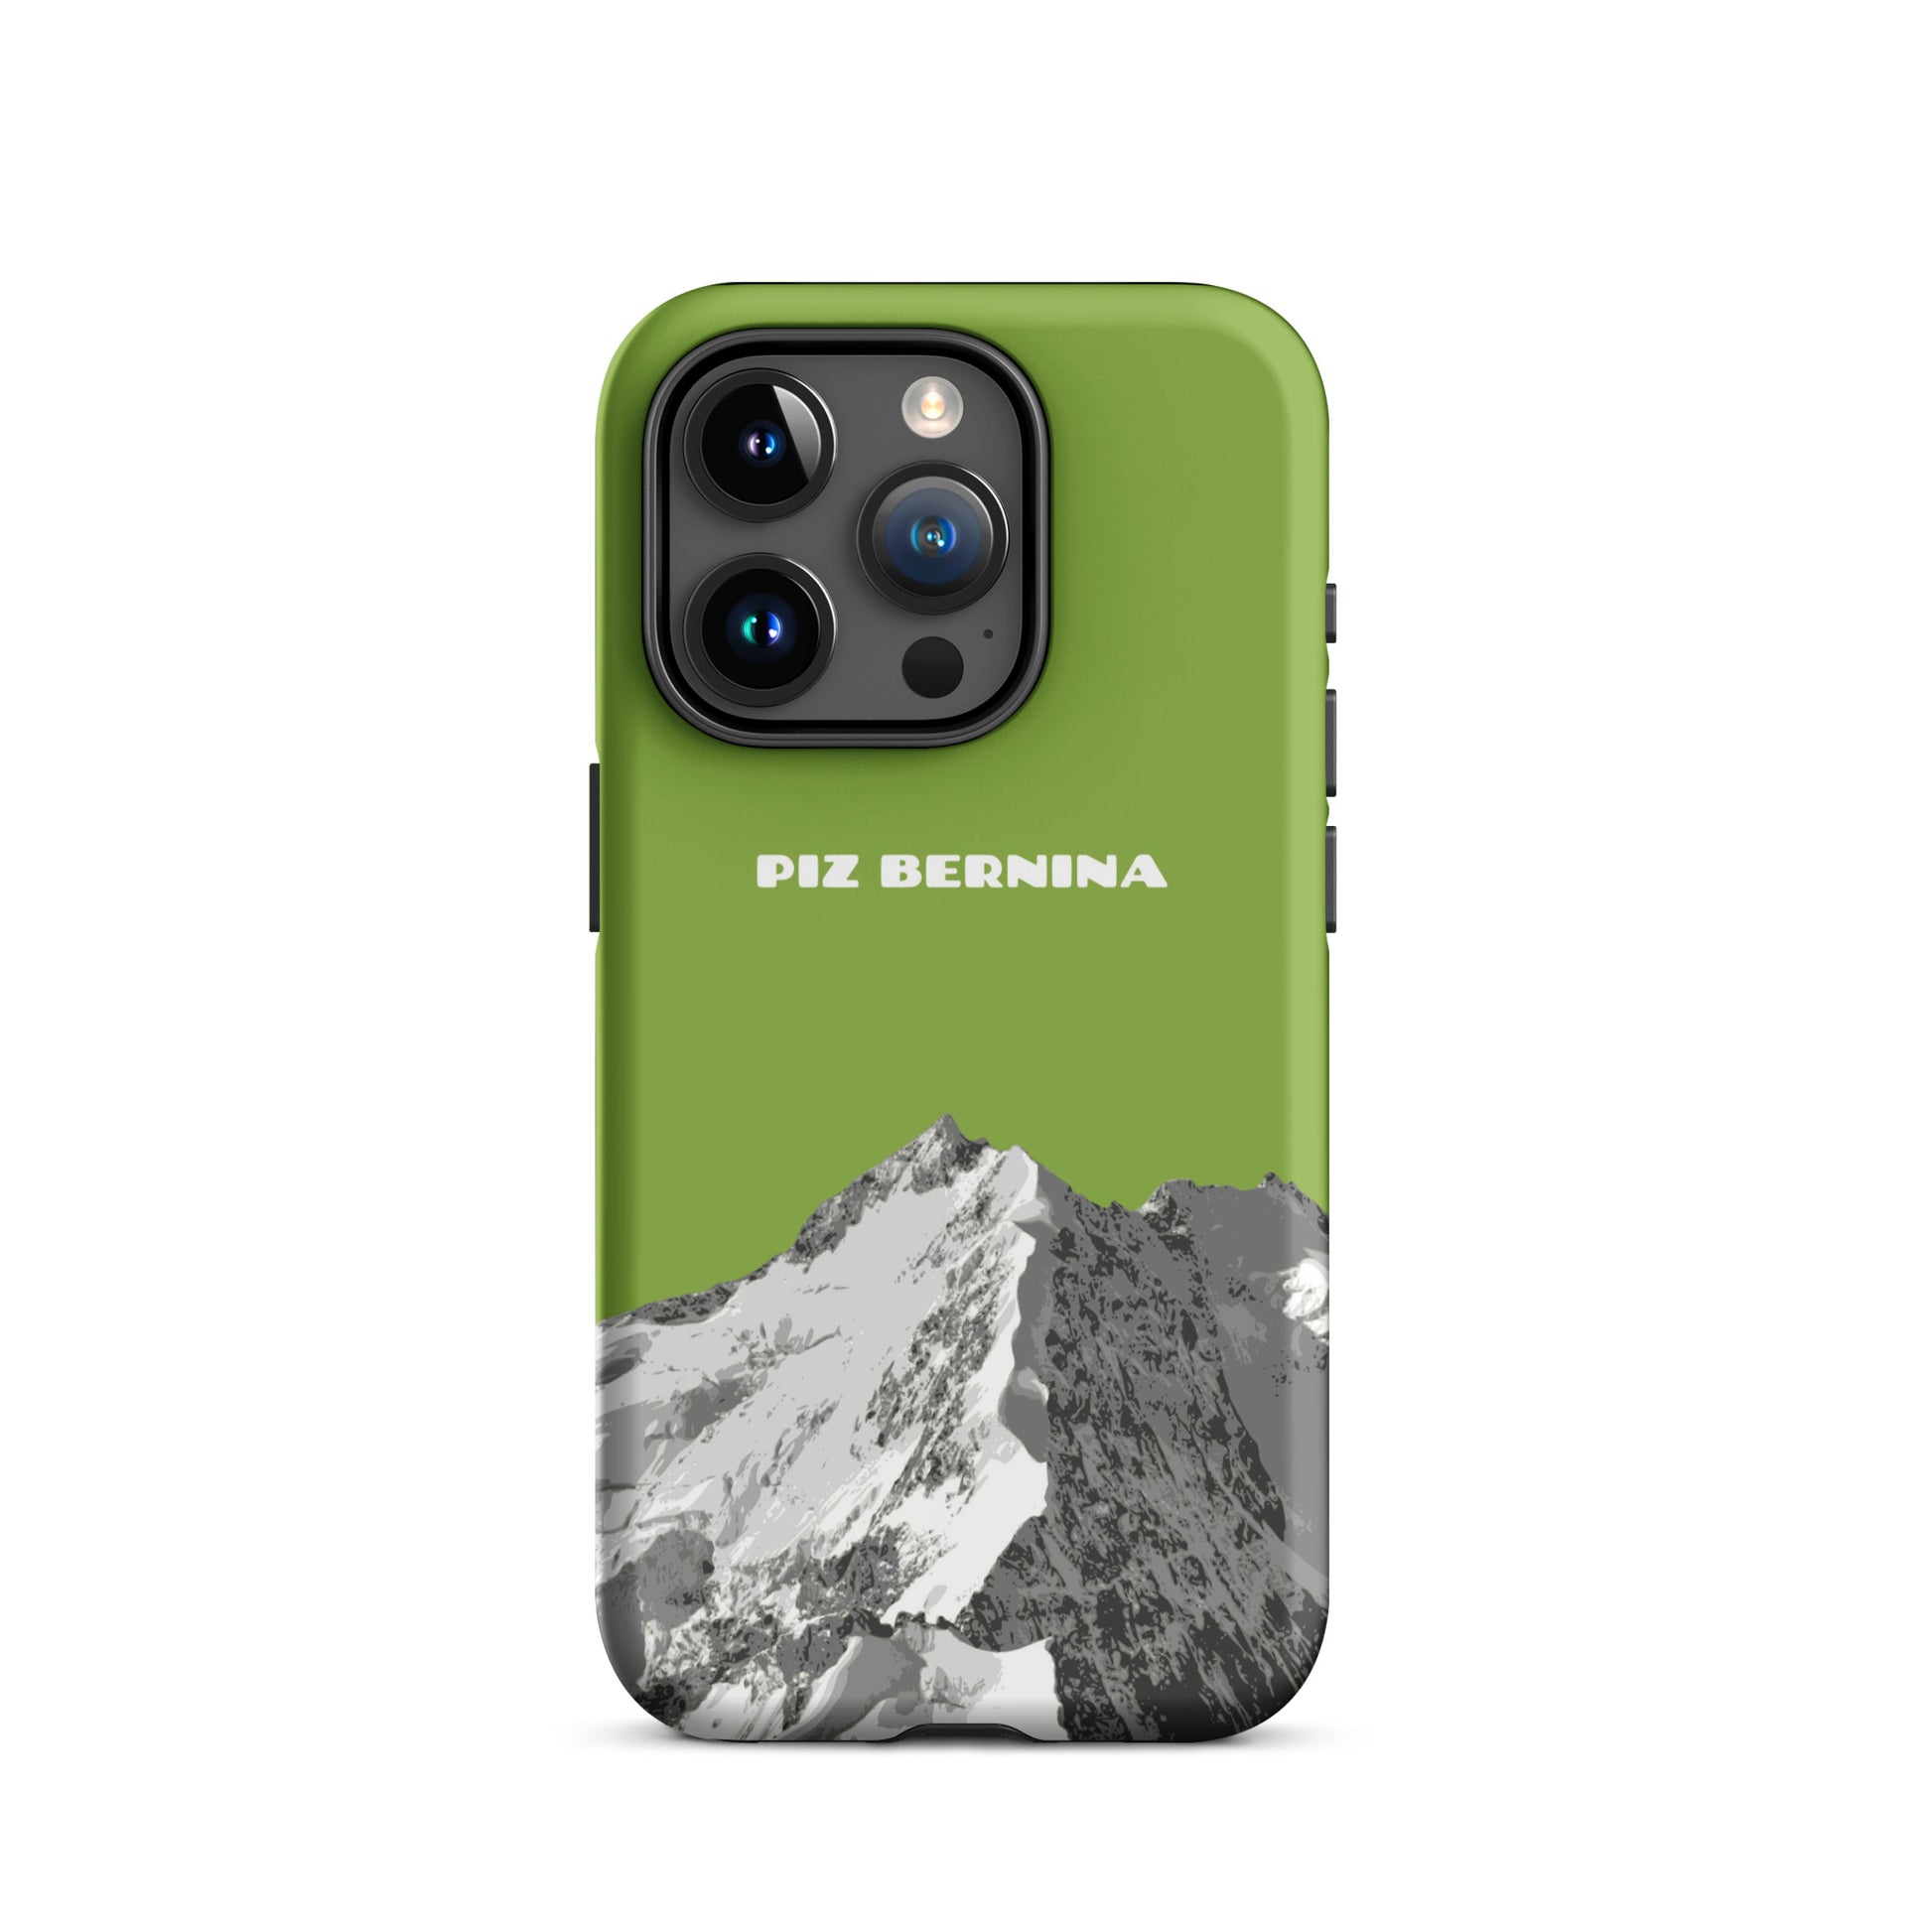 Hülle für das iPhone 15 Pro von Apple in der Farbe Gelbgrün, dass den Piz Bernina in Graubünden zeigt.